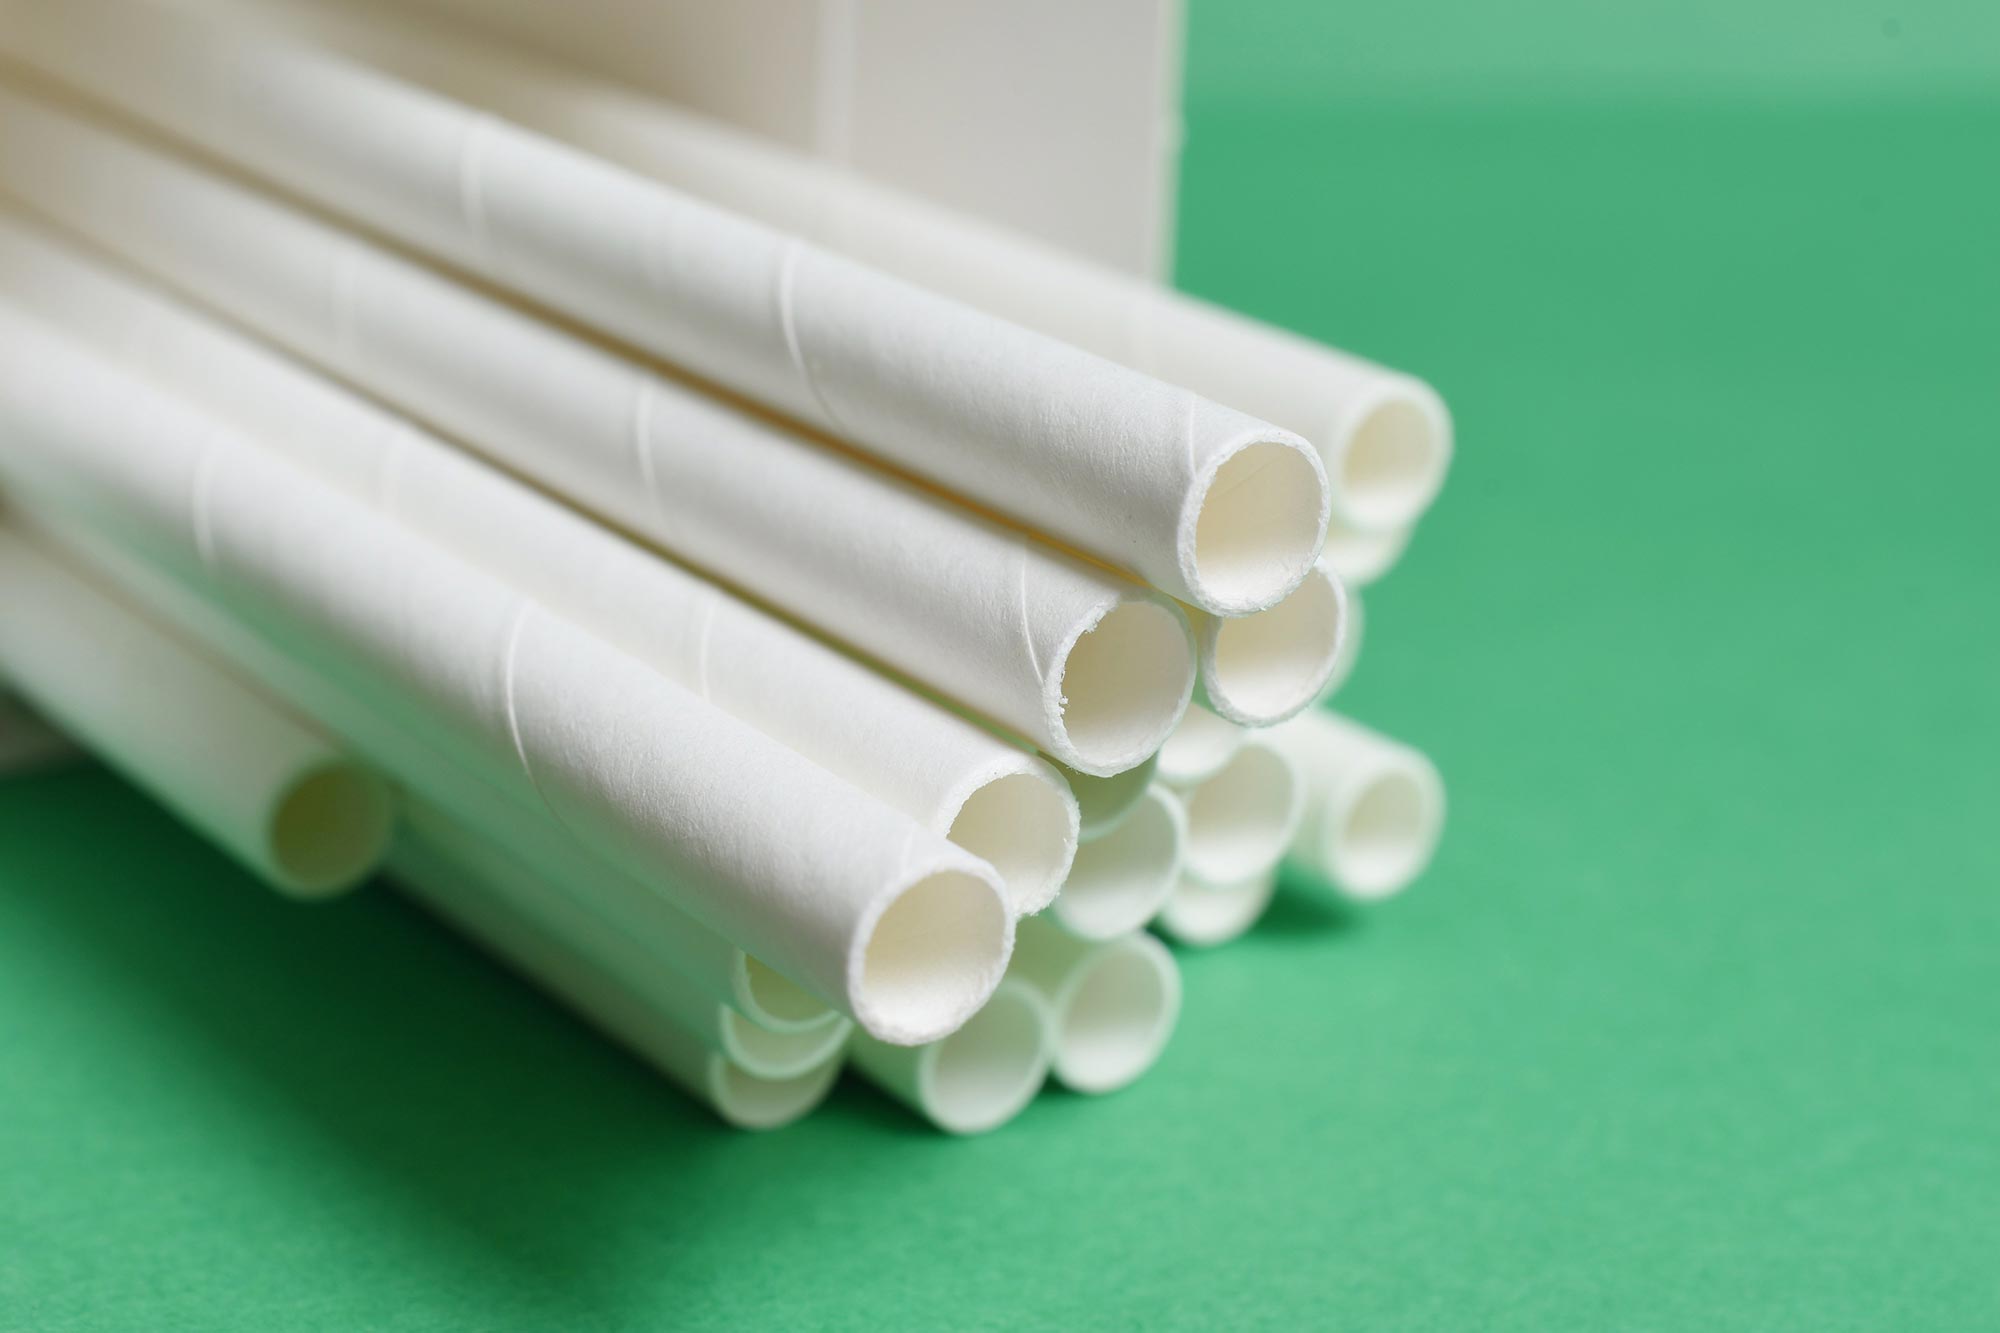 Papieren rietjes kunnen gevaarlijk zijn voor de gezondheid en slechter voor het milieu dan plastic versies